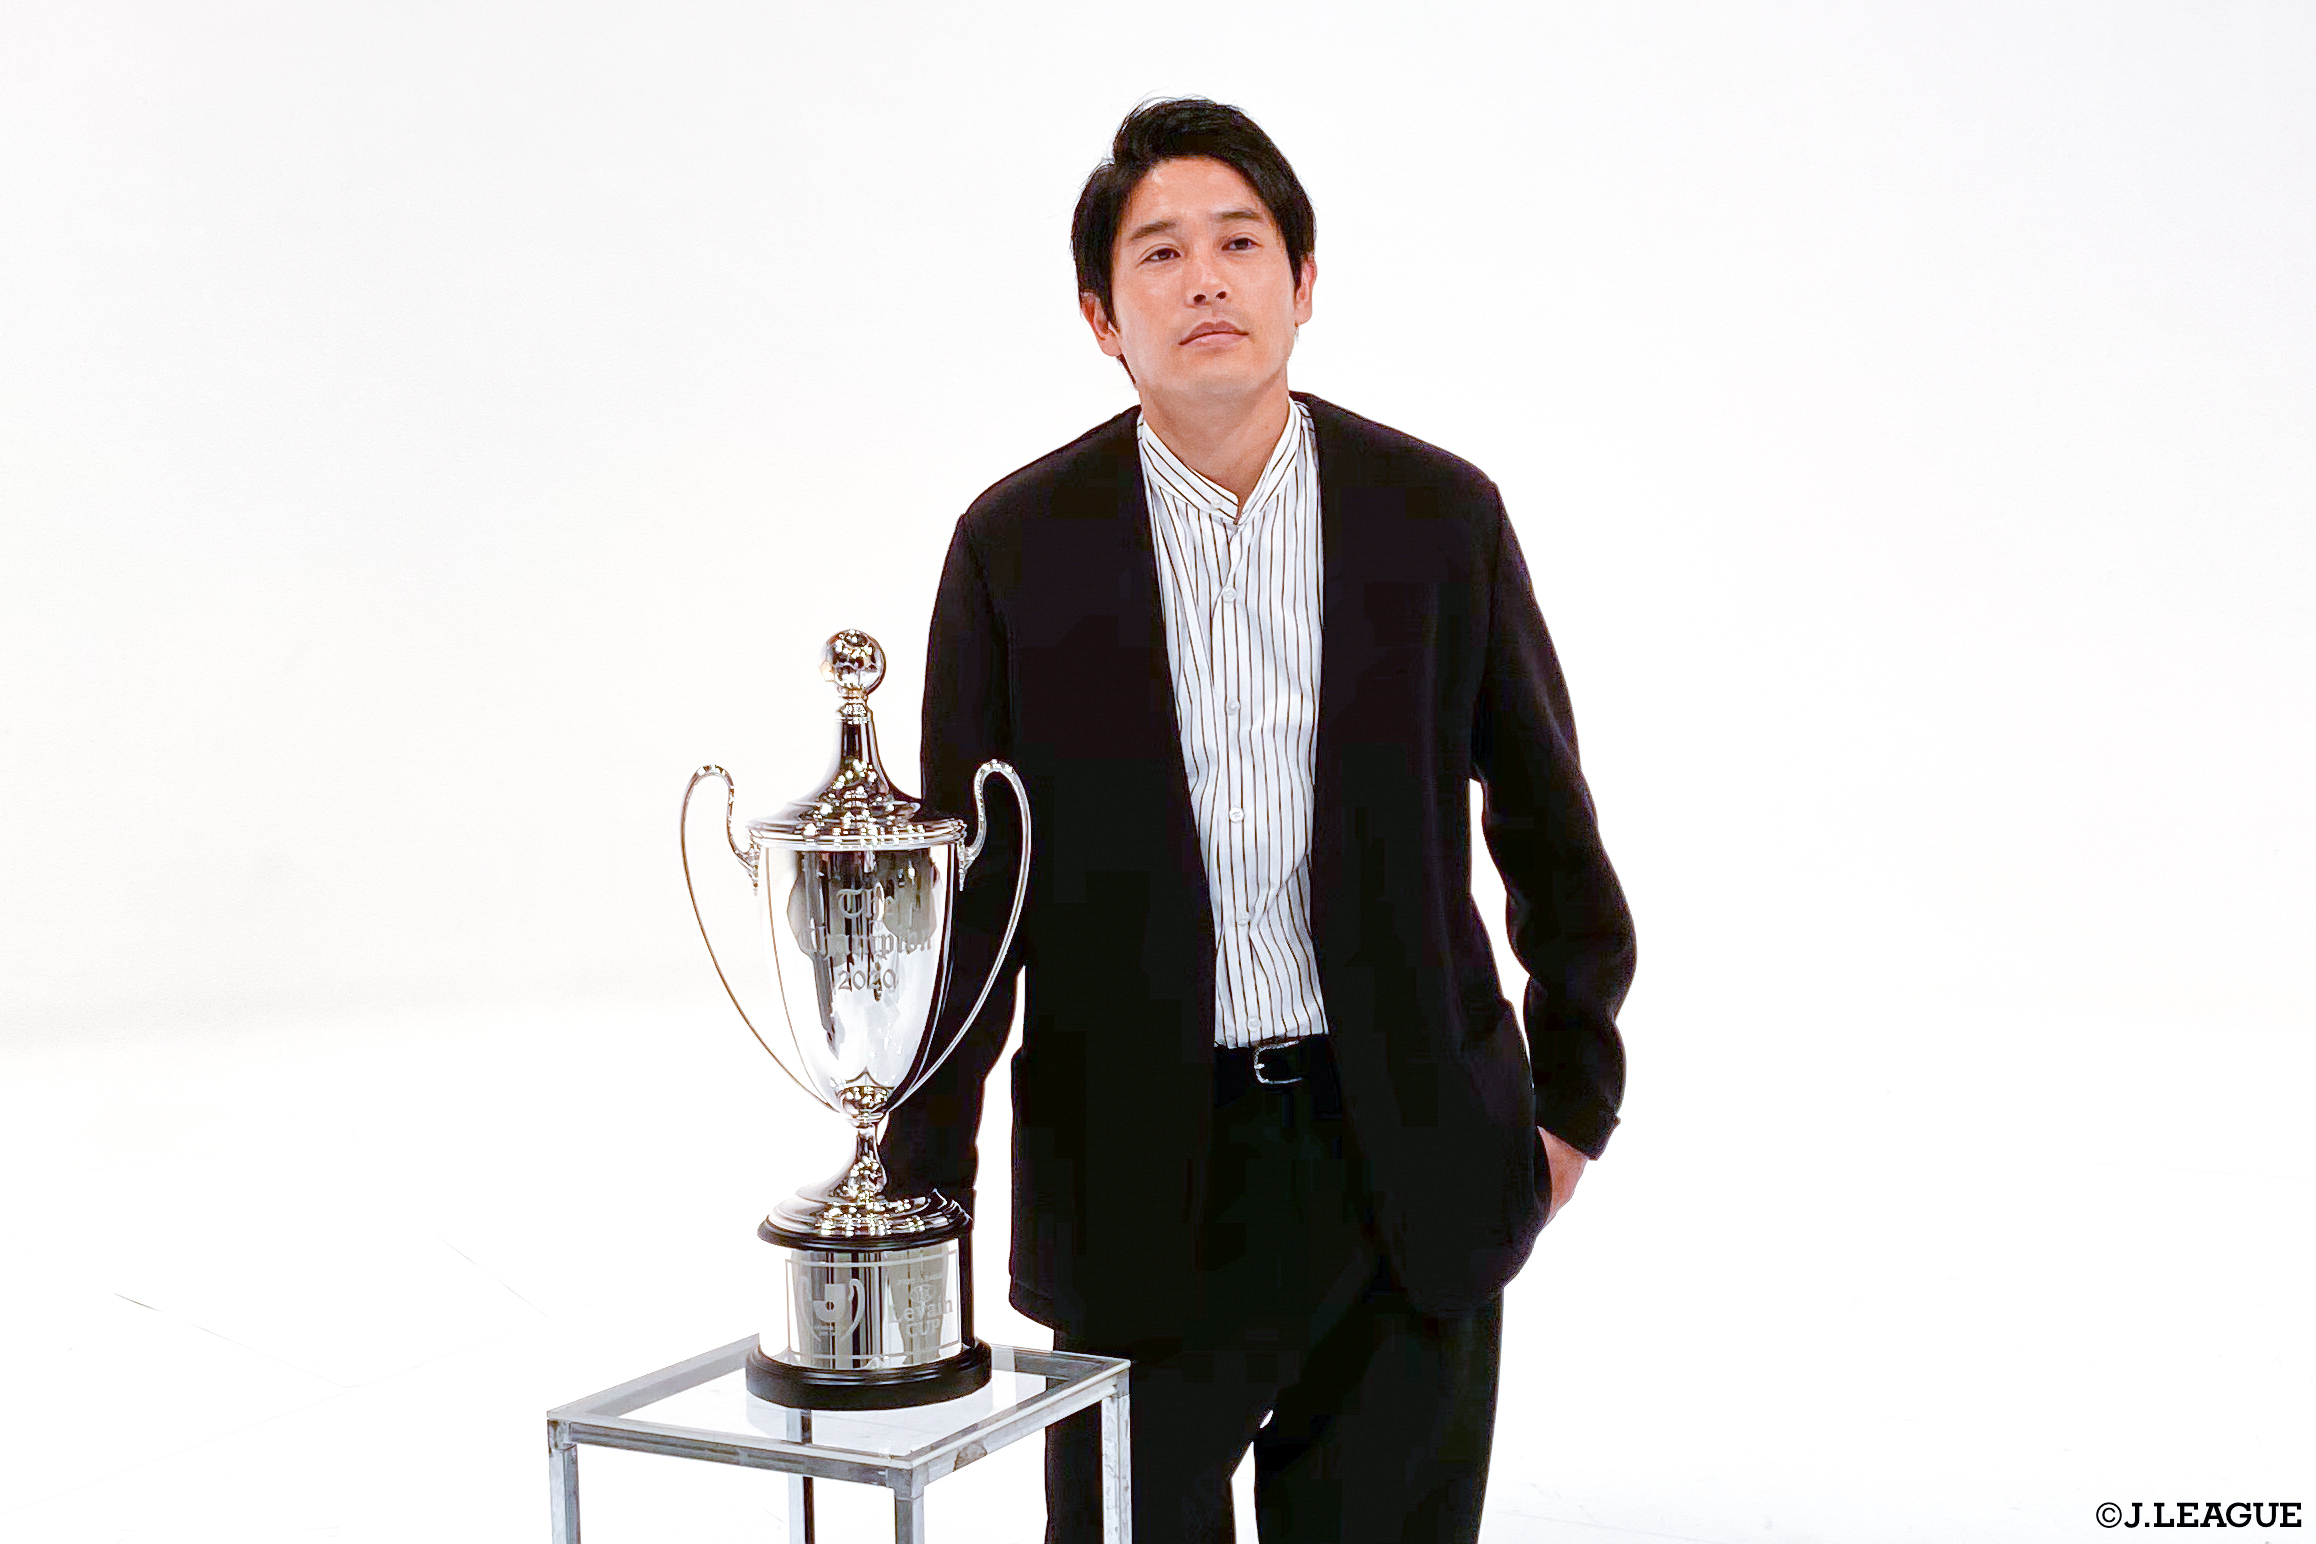 ｊリーグ 日本プロサッカーリーグ 内田篤人 さんのオフショットをお届け ２０２０ｊリーグybcルヴァンカップ 決勝 アンバサダーに就任した内田篤人さんの取材日オフショット 後日インタビューを公開予定です お楽しみに ｊリーグ